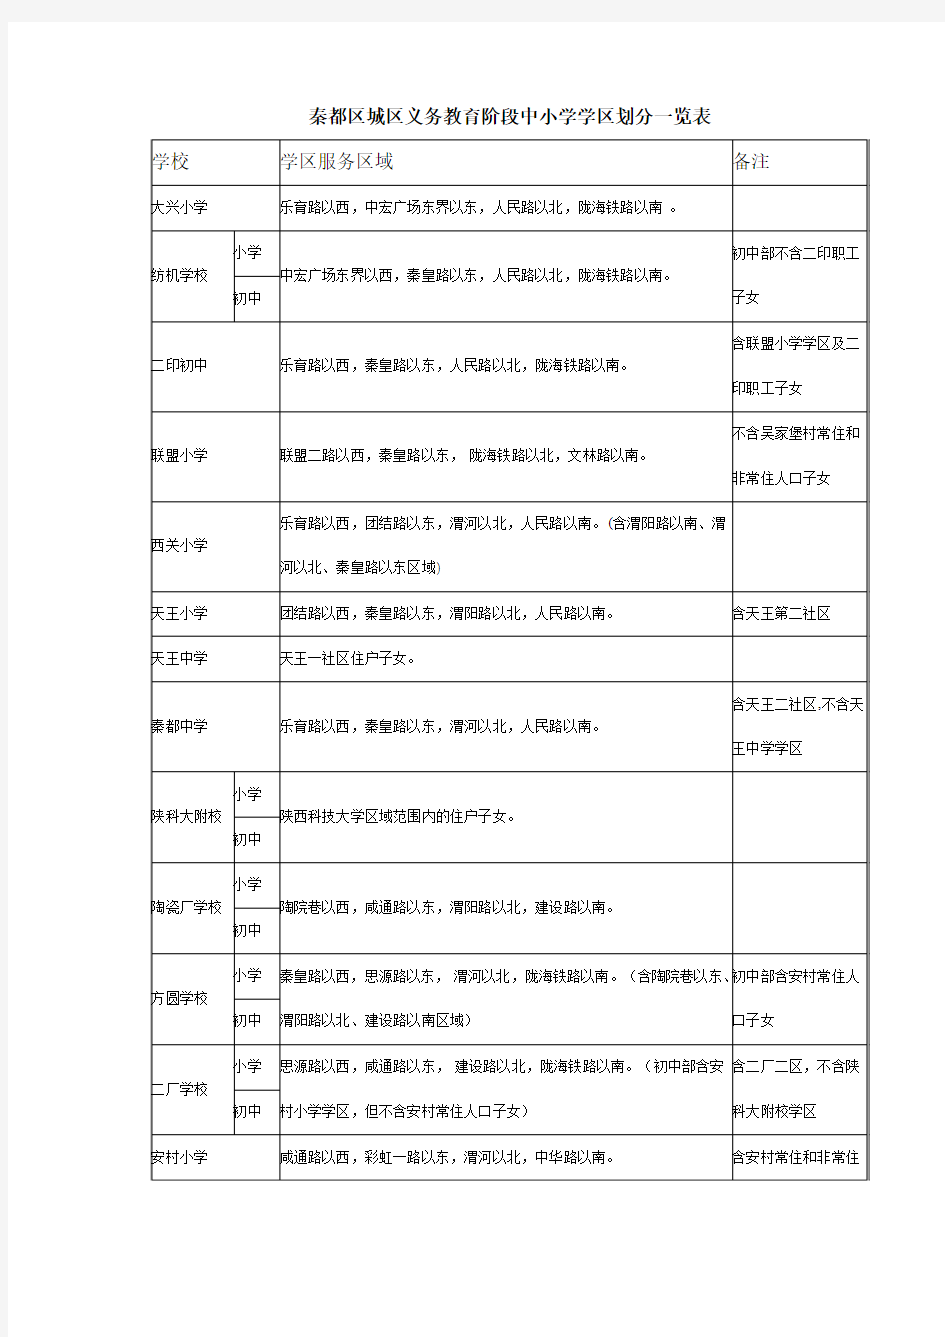 秦都区城区义务教育阶段中小学学区划分一览表